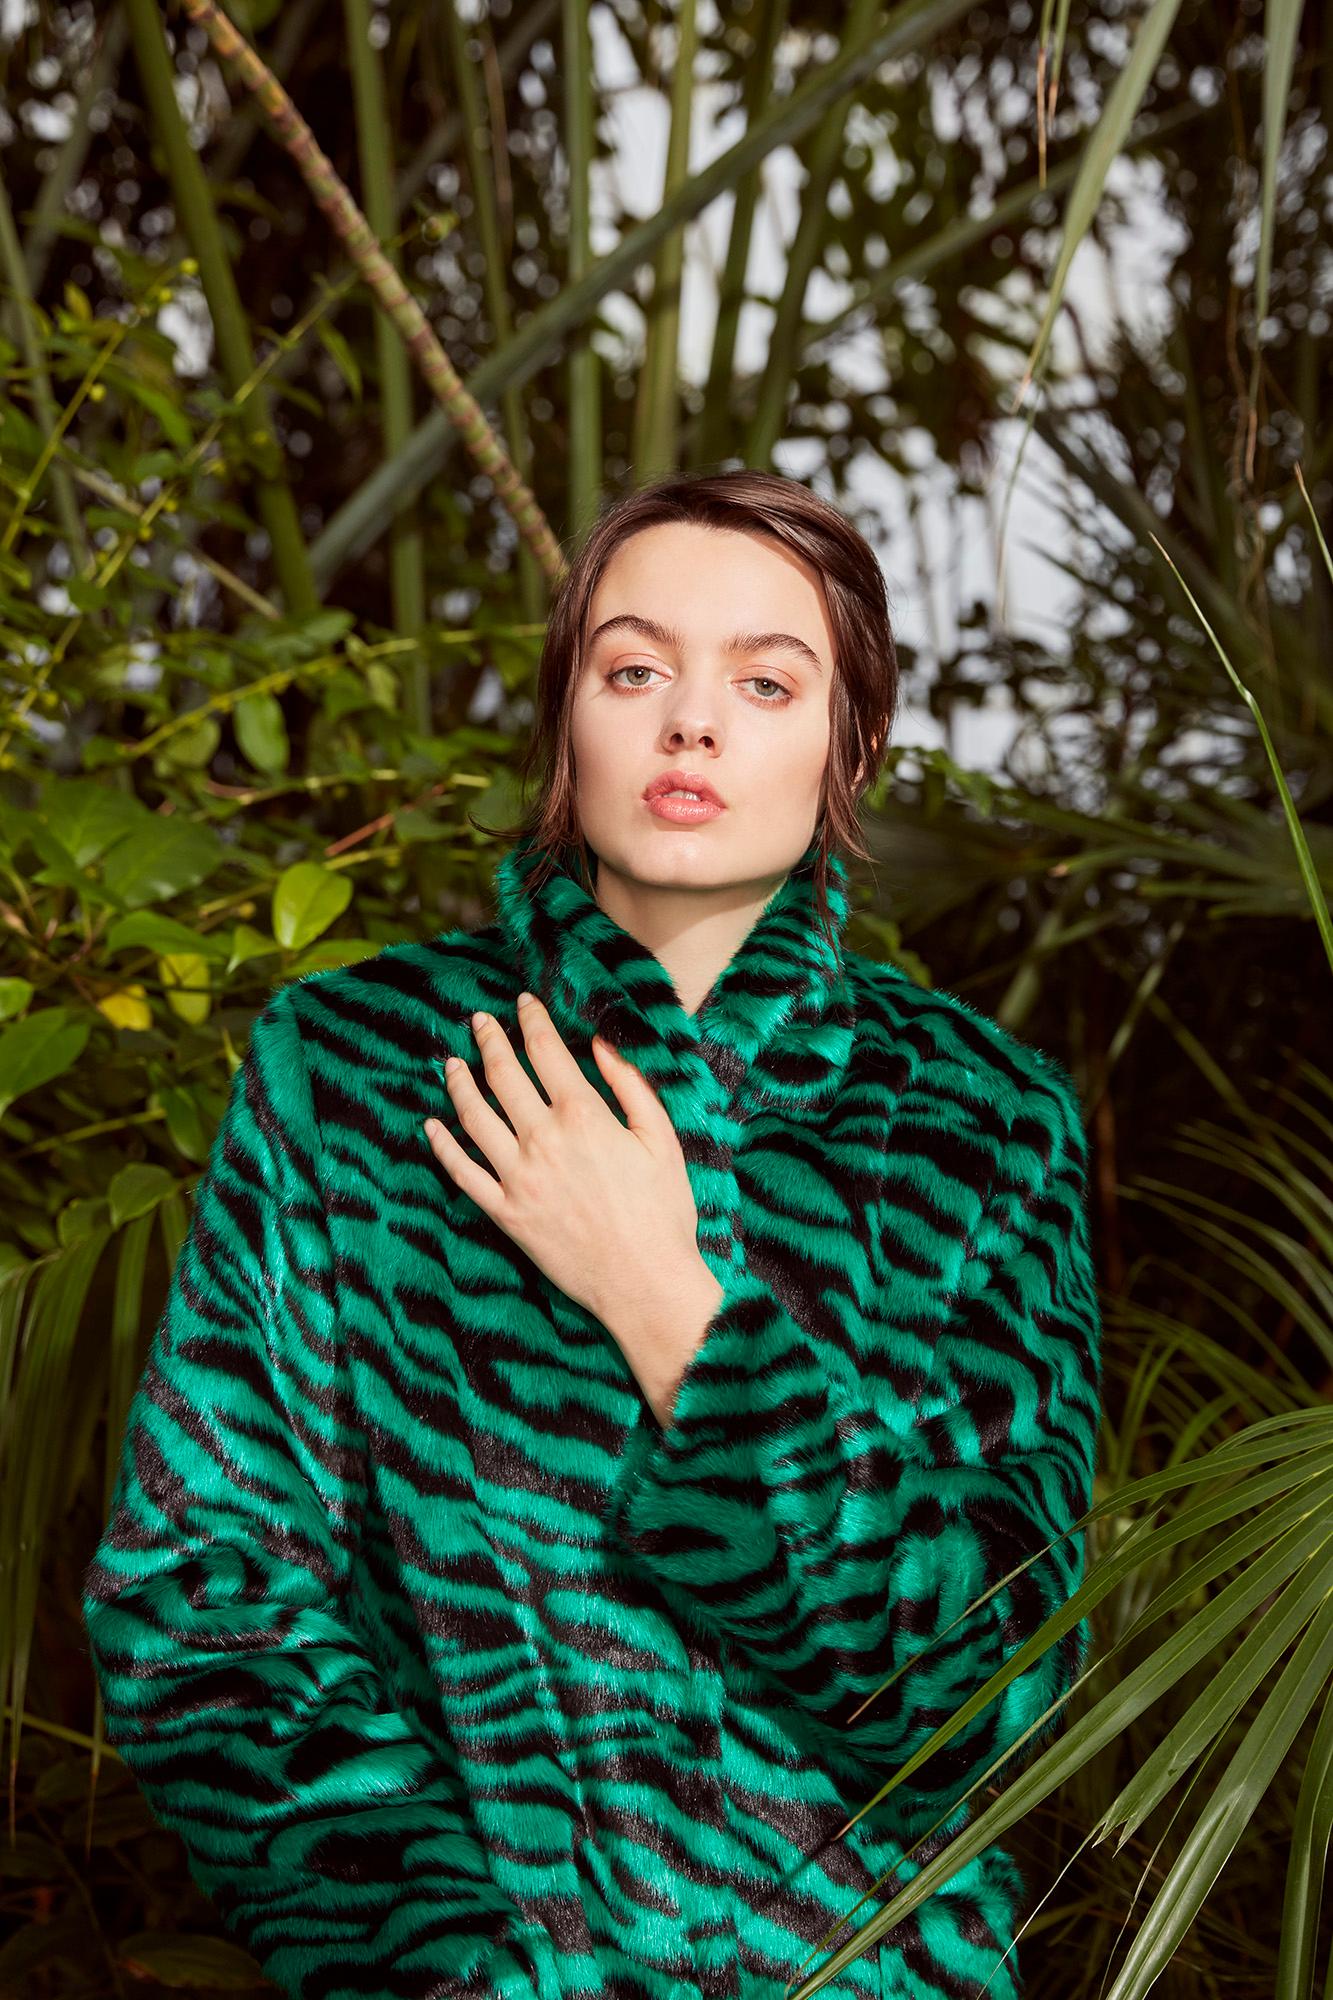 Verheyen London Esmeralda Faux Fur Coat in Emerald Green Zebra Print size uk 12 For Sale 6